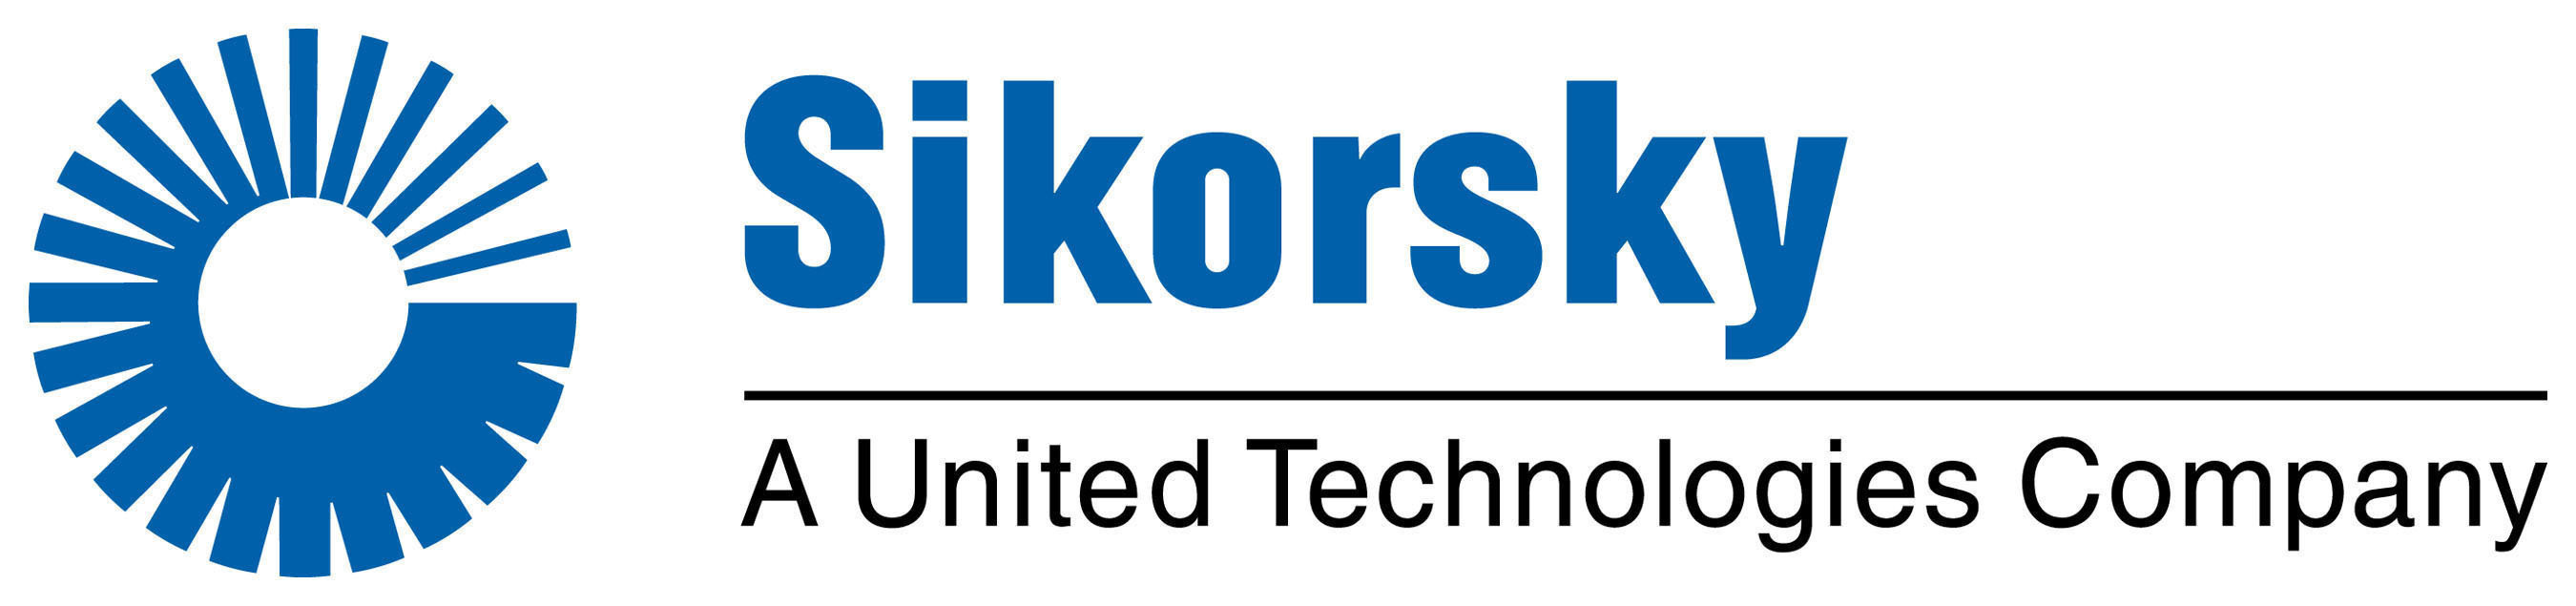 Sikorsky Logo. (PRNewsFoto/SIKORSKY AIRCRAFT) (PRNewsFoto/SIKORSKY)